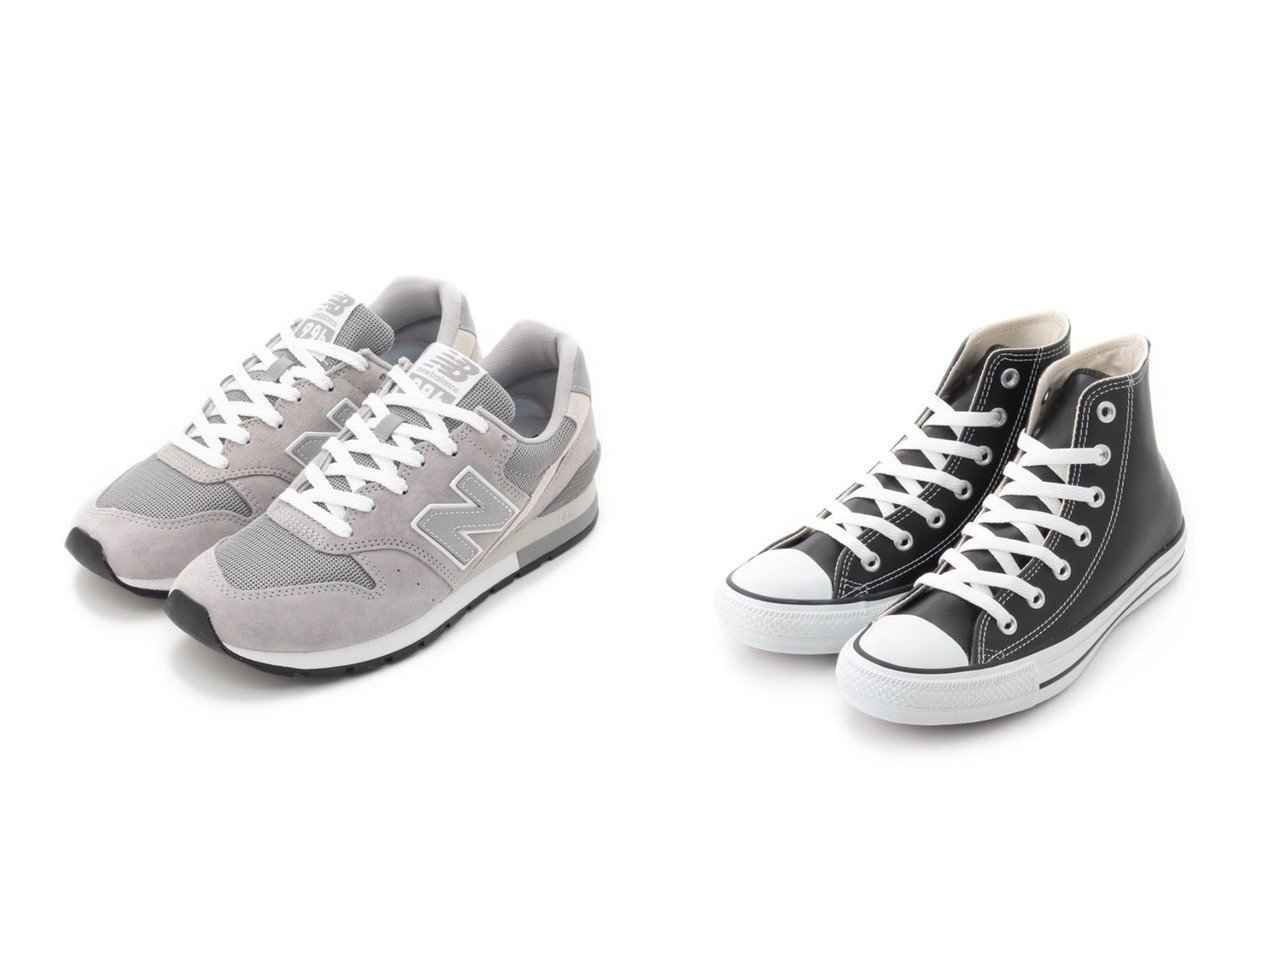 【emmi/エミ】の【CONVERSE】LEA ALL STAR HI&【New Balance】CM996 シューズ・靴のおすすめ！人気、トレンド・レディースファッションの通販 おすすめで人気の流行・トレンド、ファッションの通販商品 メンズファッション・キッズファッション・インテリア・家具・レディースファッション・服の通販 founy(ファニー) https://founy.com/ ファッション Fashion レディースファッション WOMEN クラシカル シューズ スニーカー スリッポン ベーシック スタンダード 定番 Standard |ID:crp329100000014153